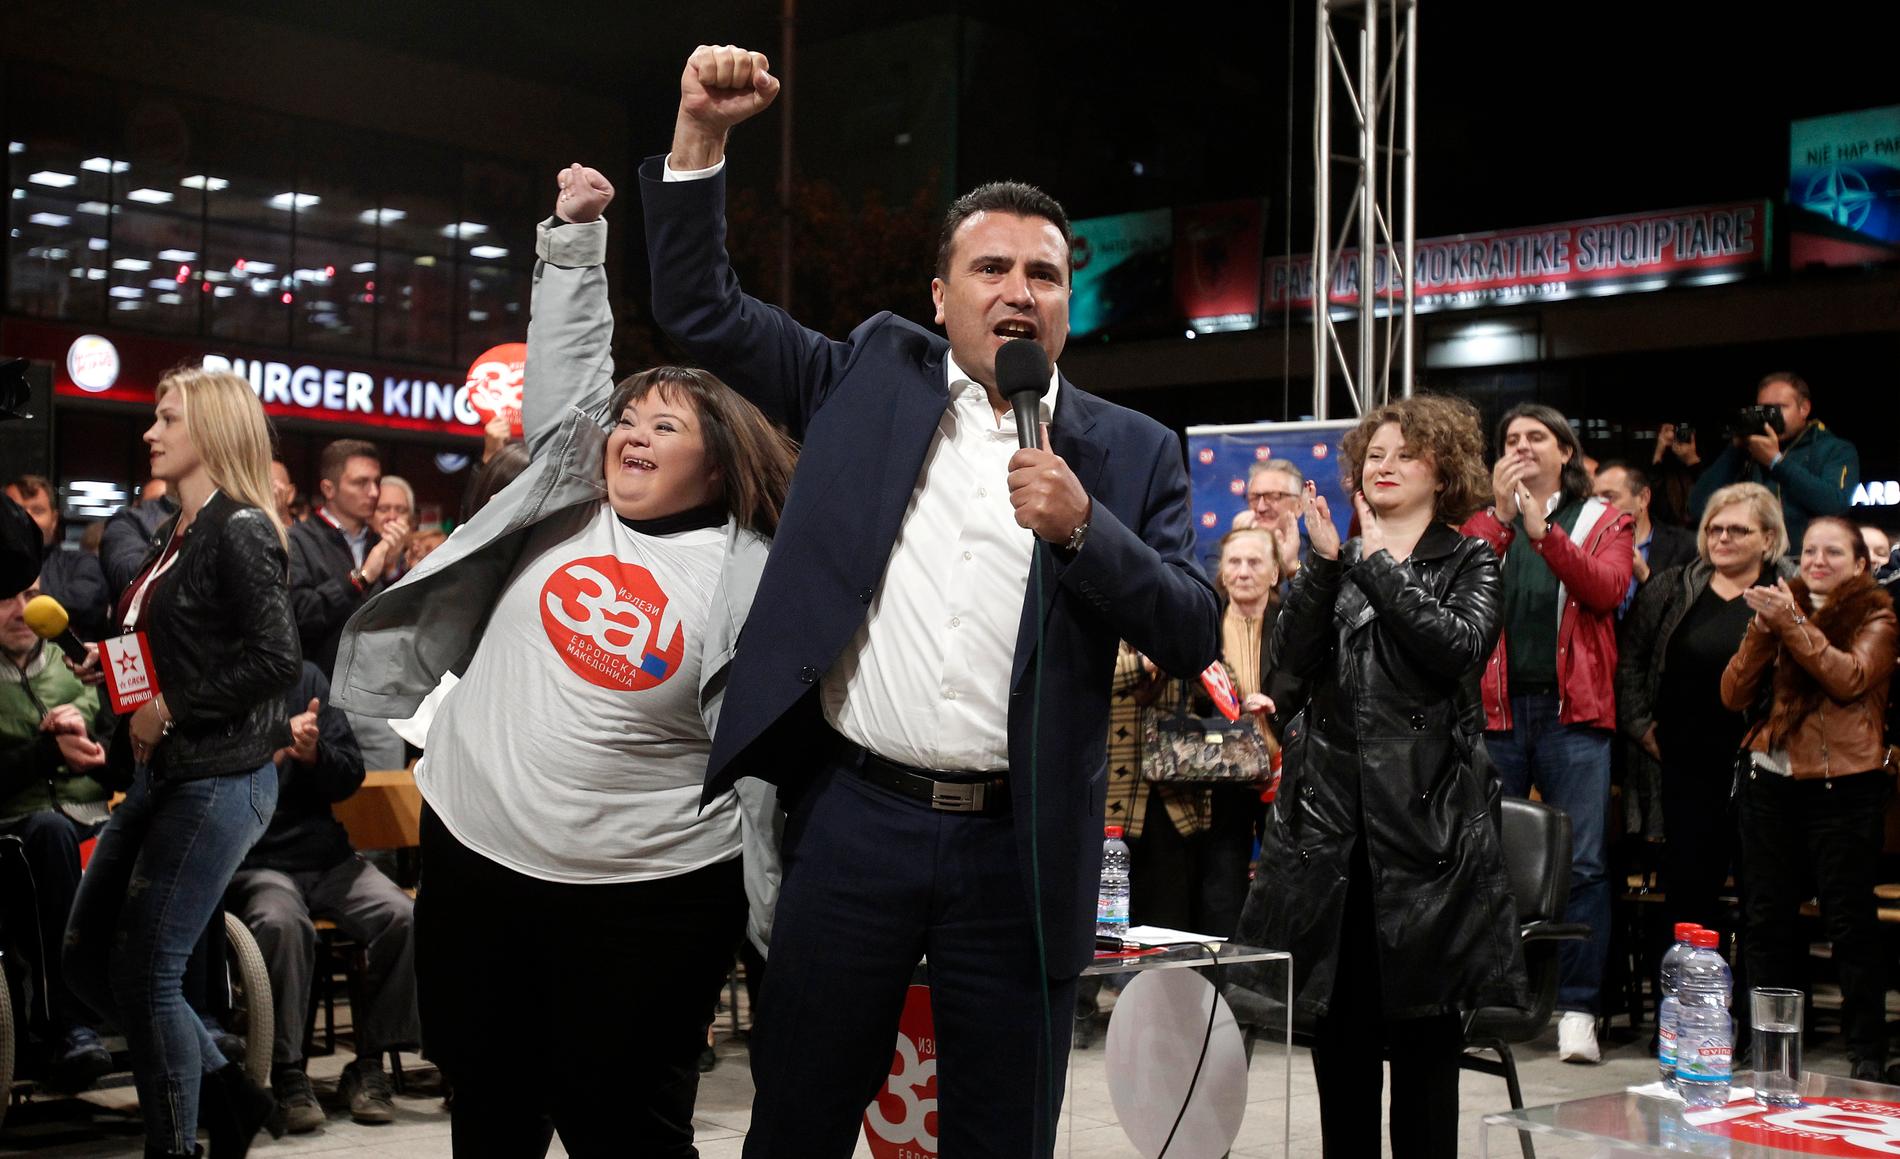 Makedoniens premiärminister Zoran Zaev vill att landets invånare röstar ja till namnbytet och hans överenskommelse med sin grekiske kollega Alexis Tsipras, som kan ta den forna jugoslaviska delrepubliken ett steg närmare EU och Nato. Bilden är från ett valmöte i staden Tetovo.